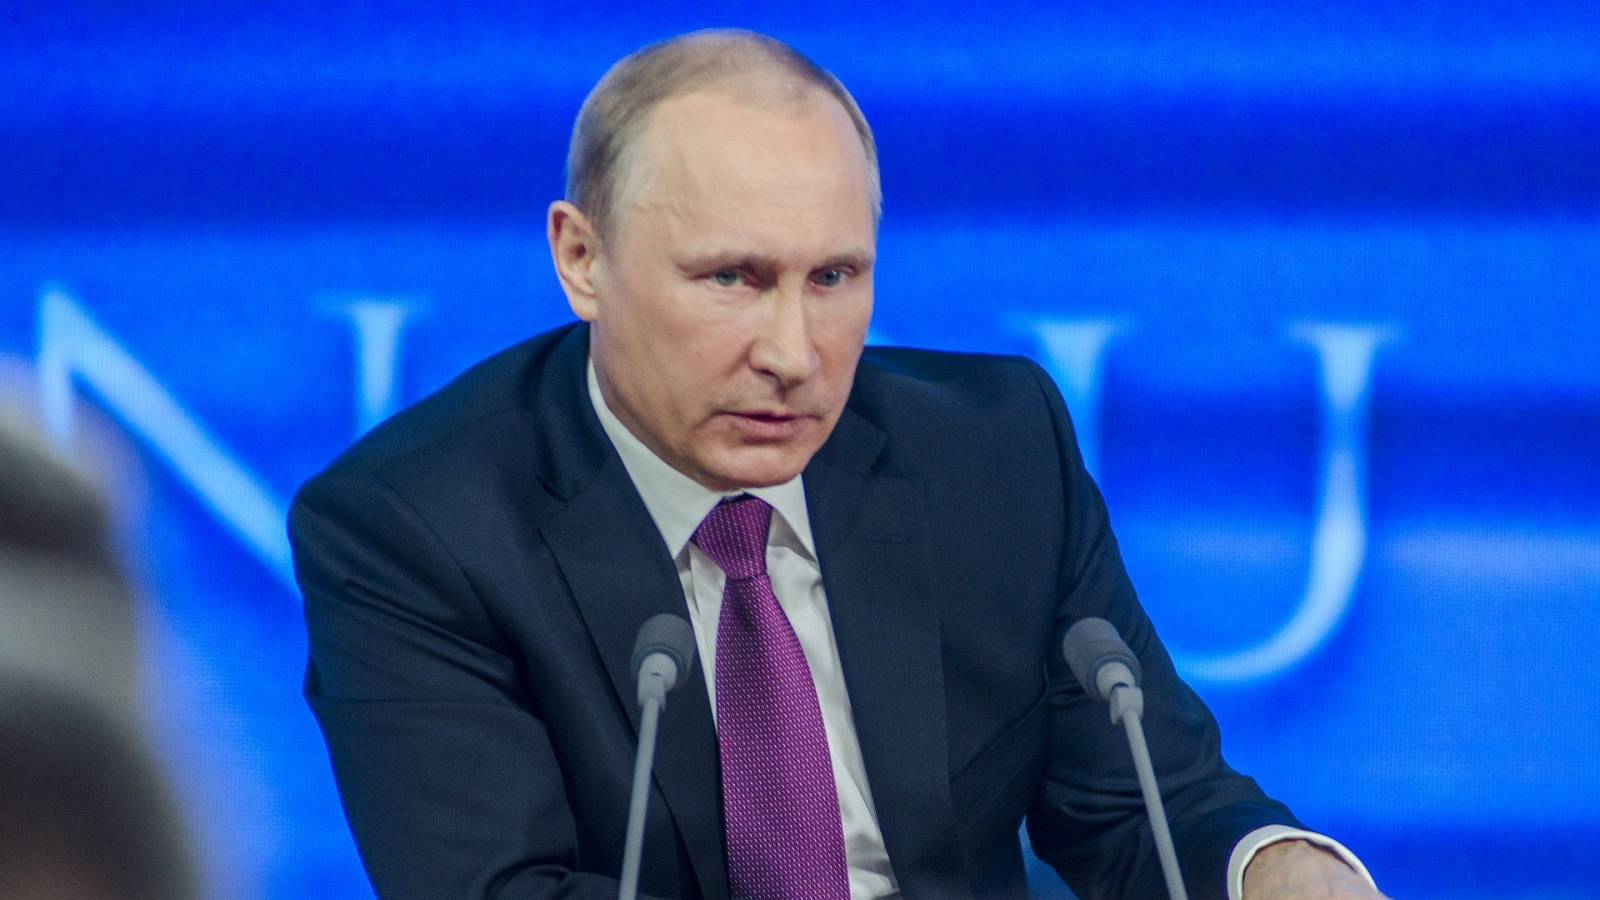 Vladimir Putin Wants to Attack the City of Kyiv Ukraine